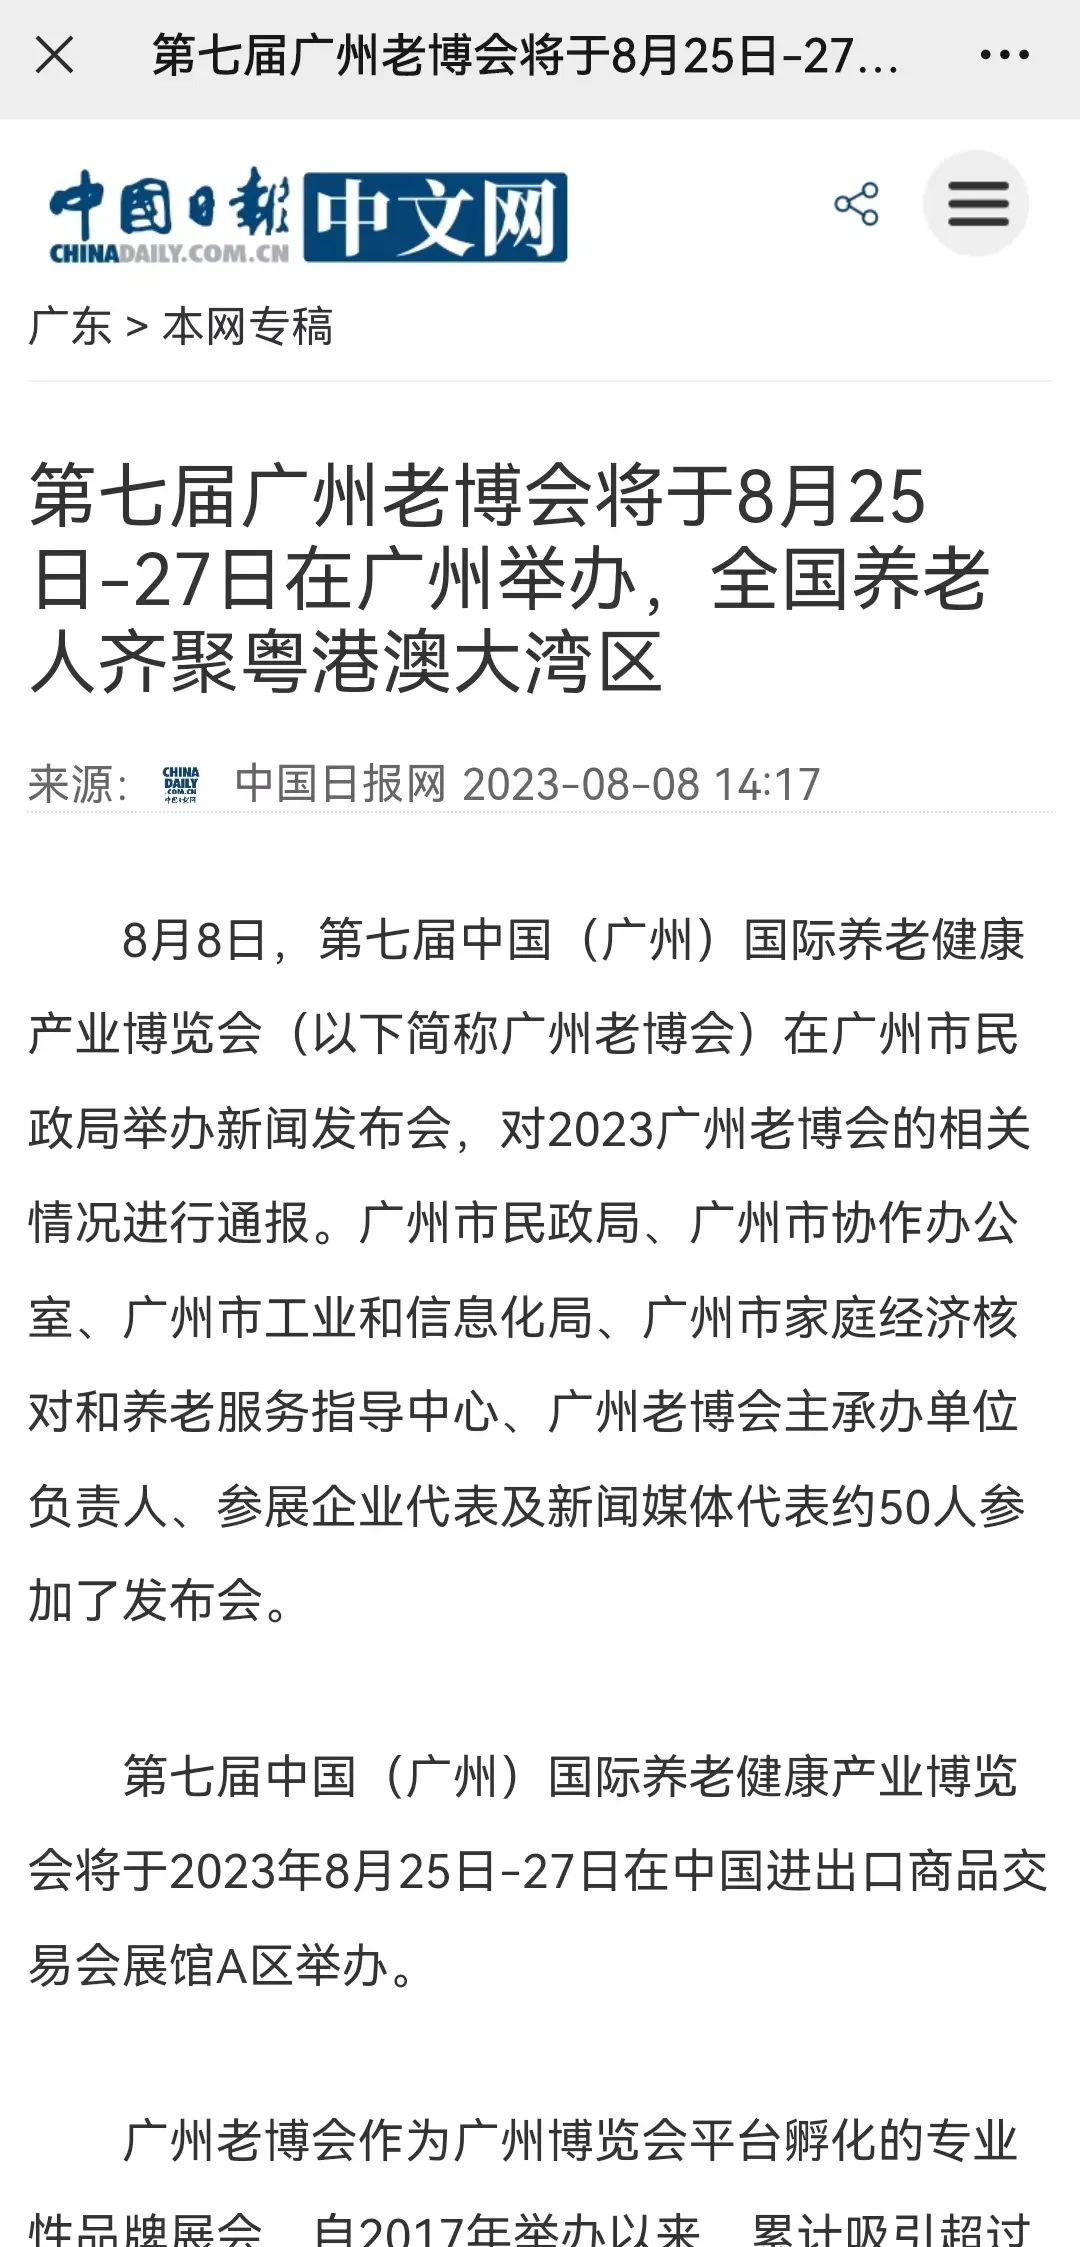 实力刷屏！中国日报等多家媒体关注报道第七届广州老博会1.jpg